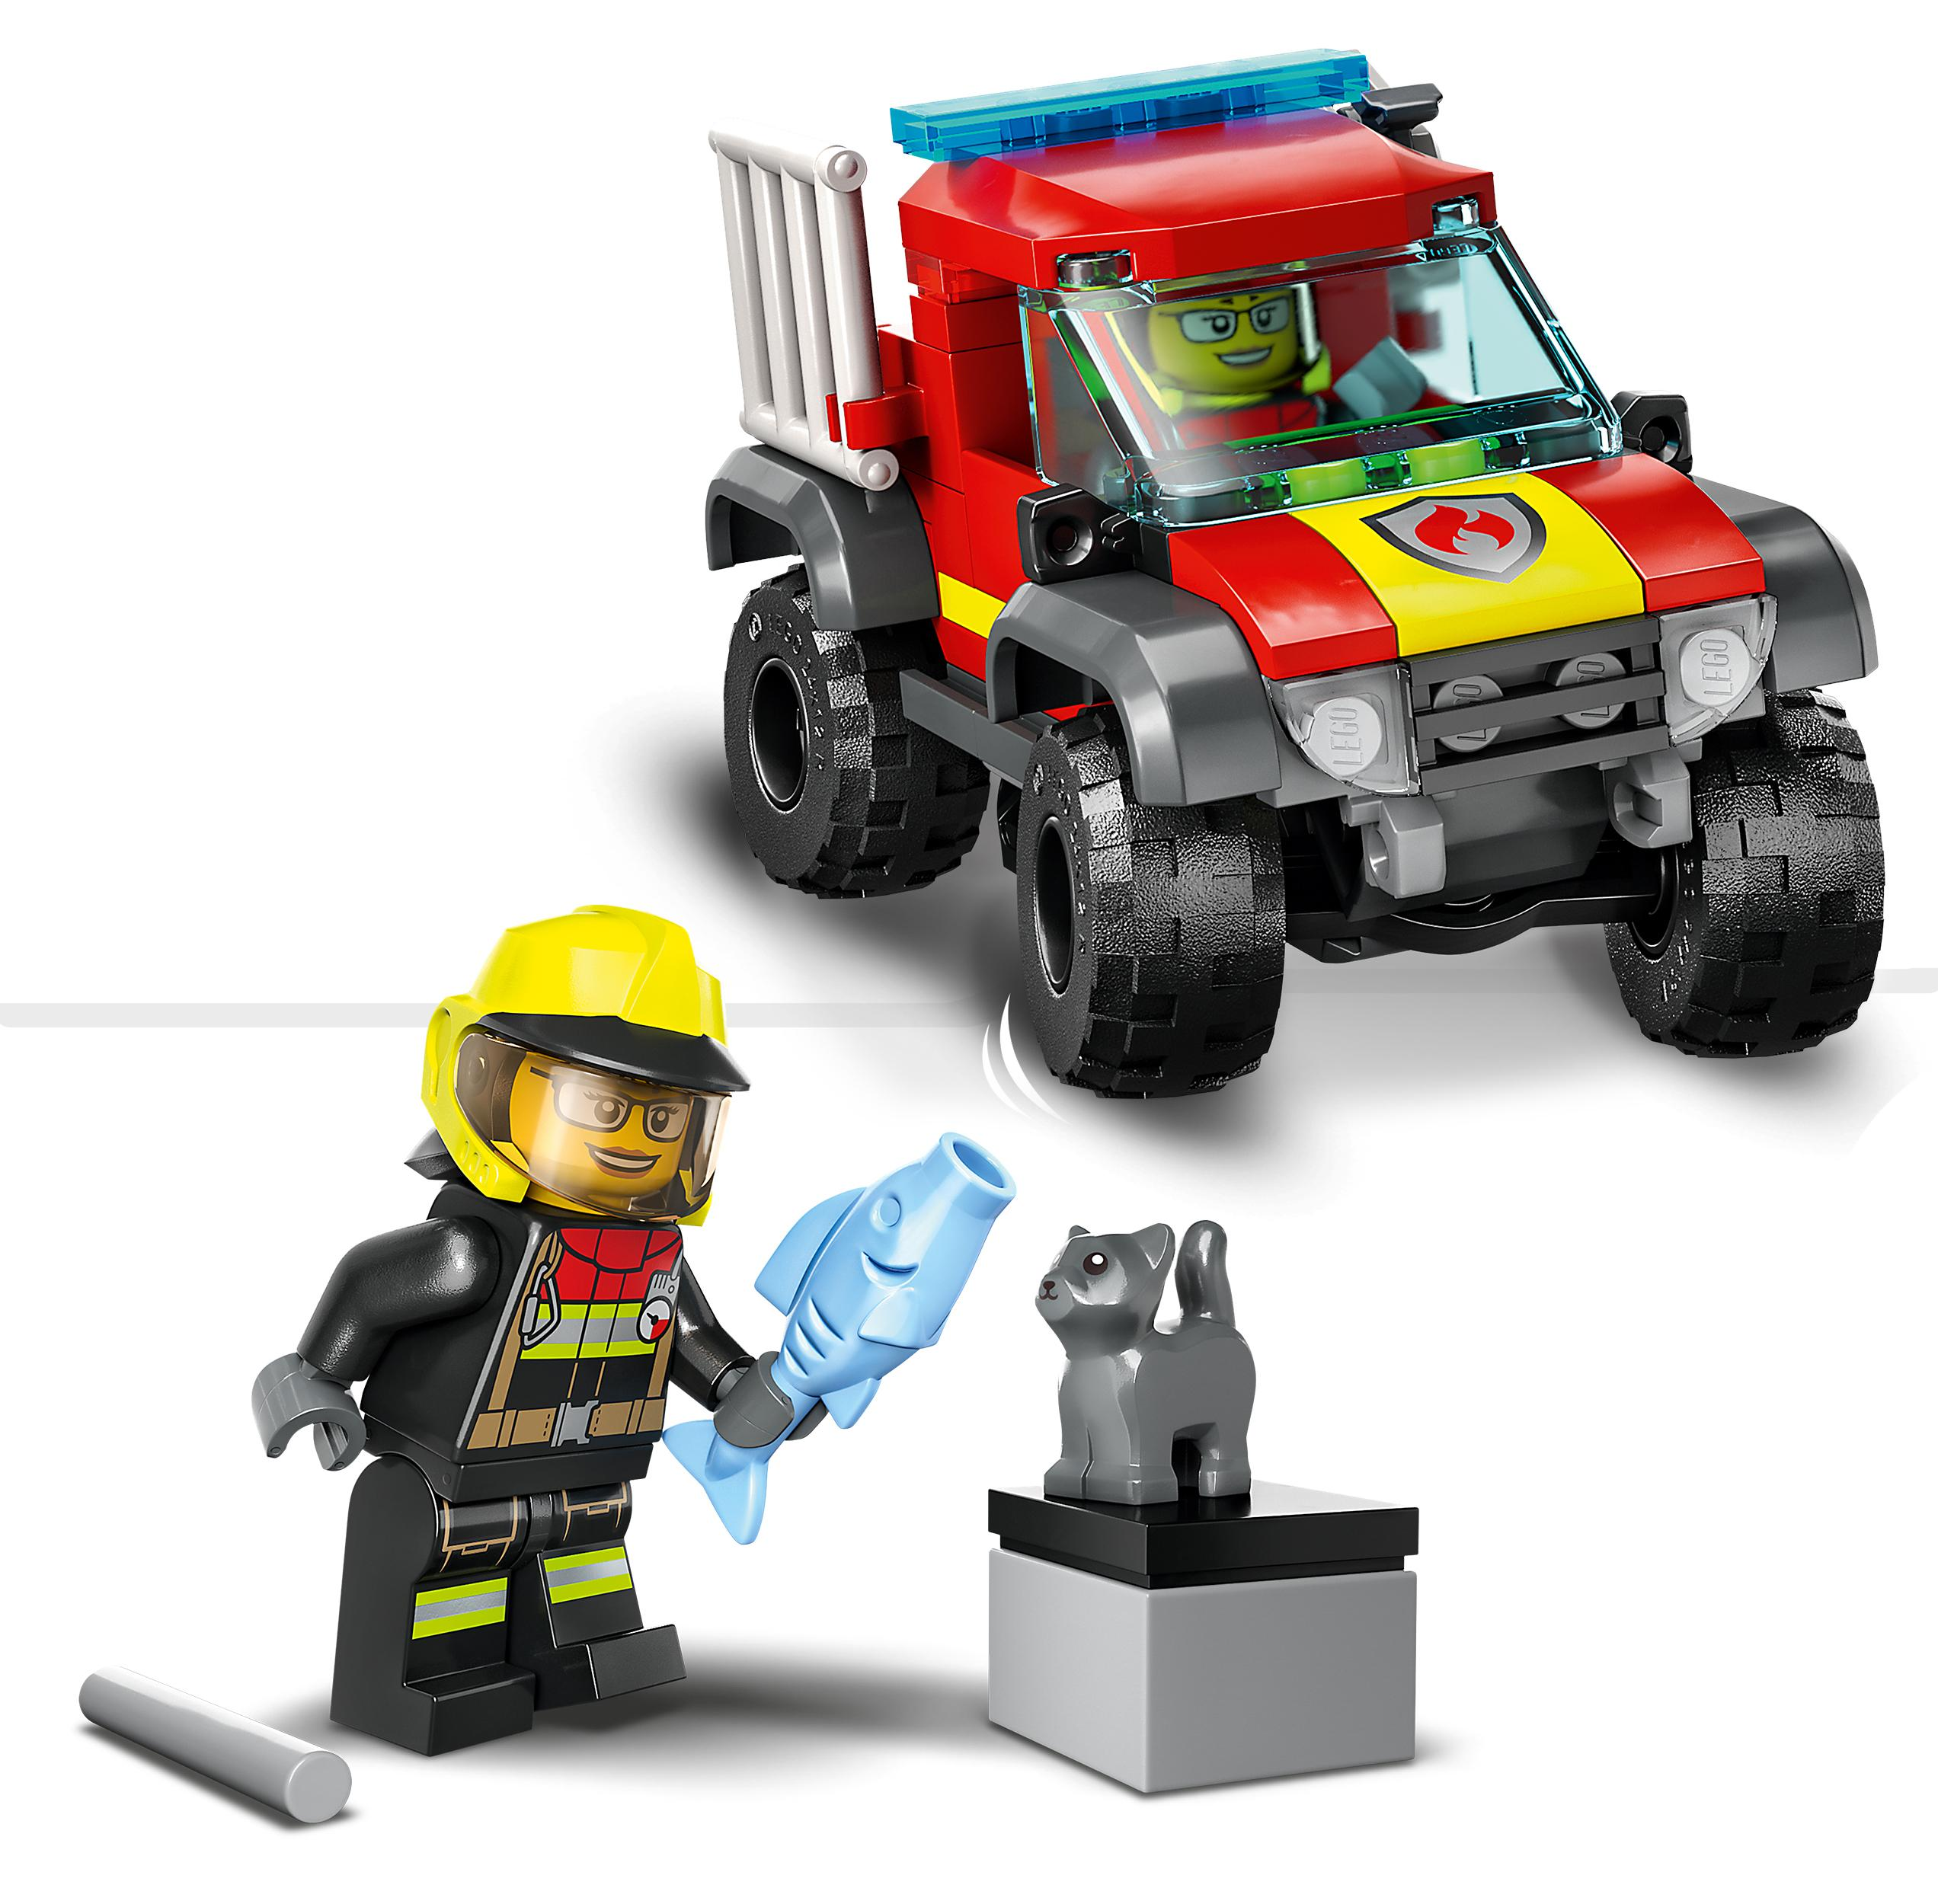 Feuerwehr-Pickup LEGO 60393 City Mehrfarbig Bausatz,